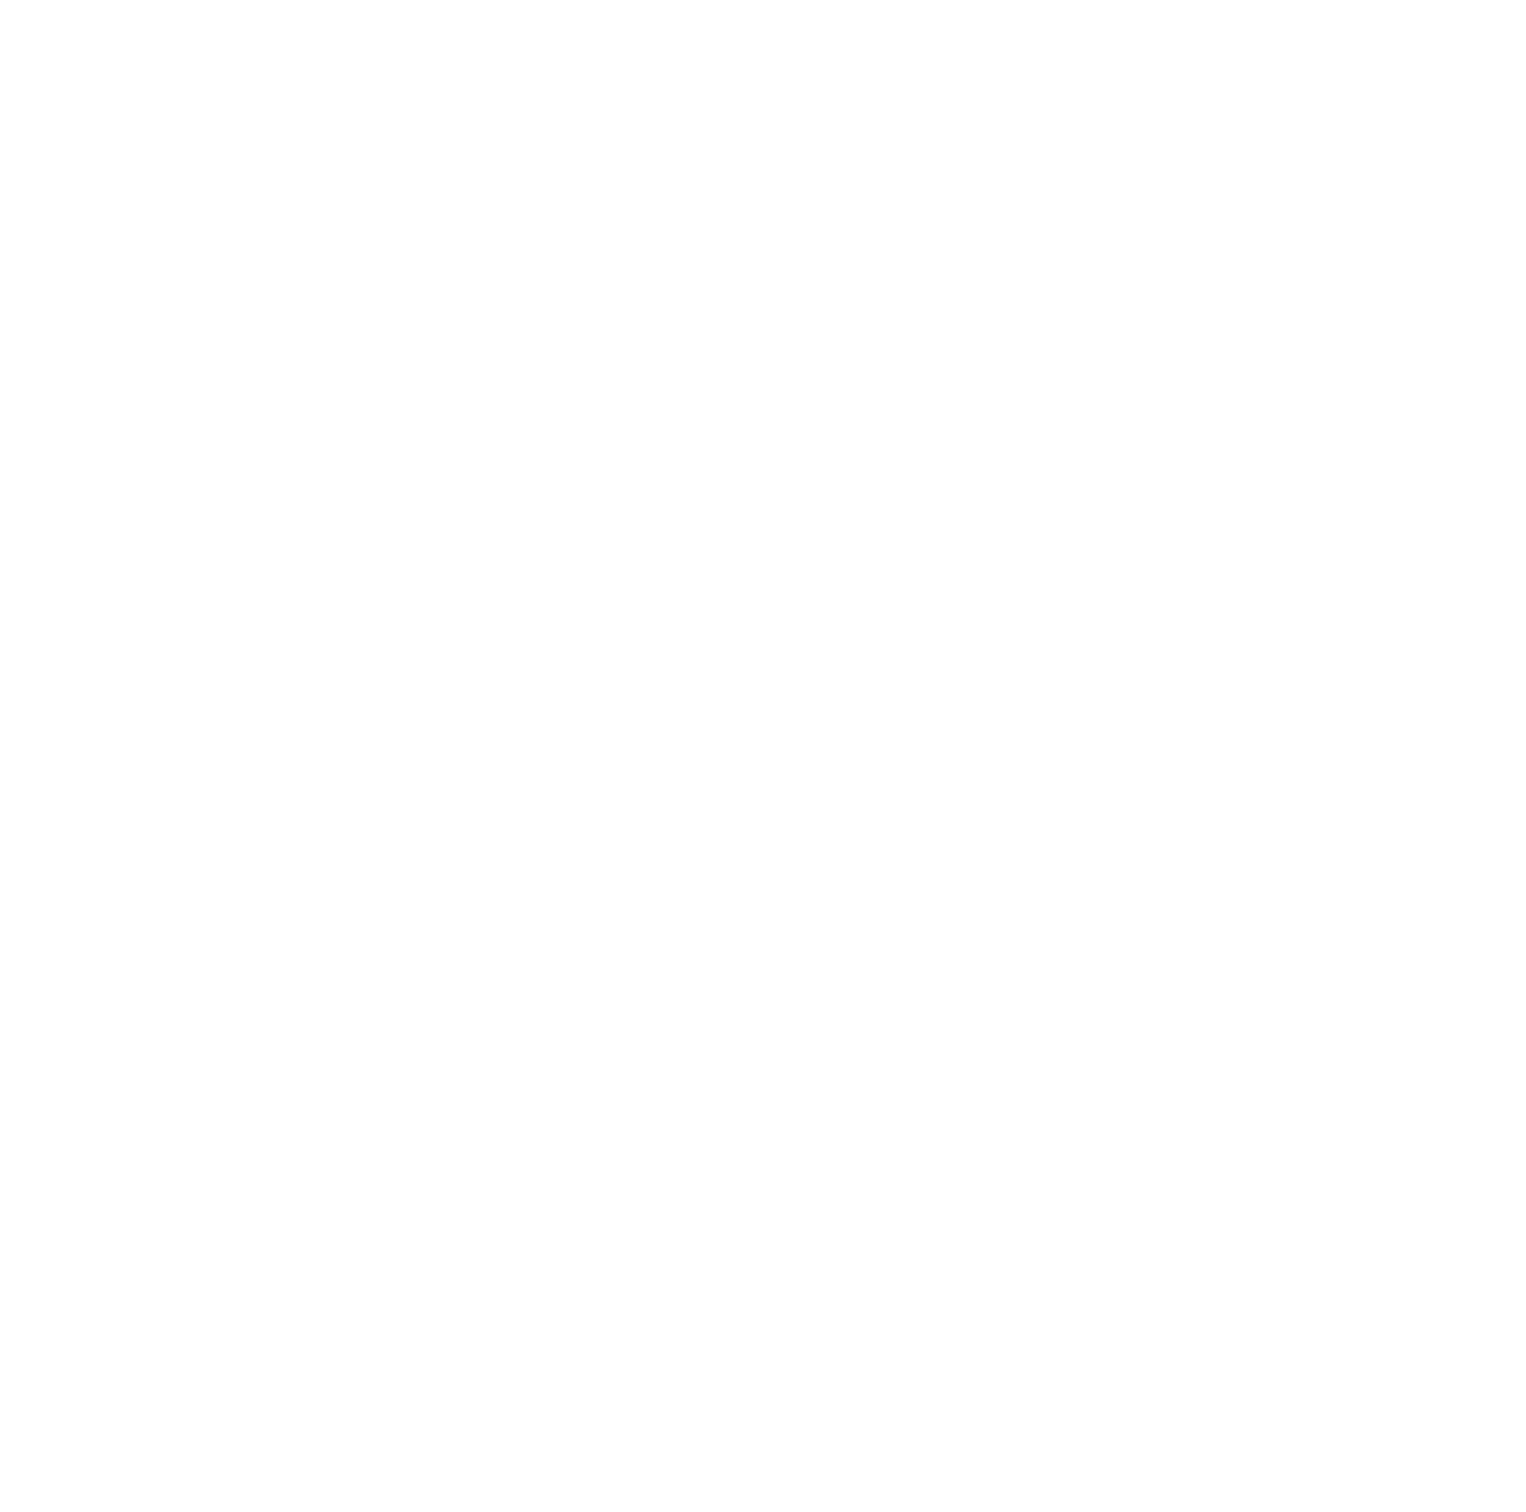 PolyNovo logo pour fonds sombres (PNG transparent)